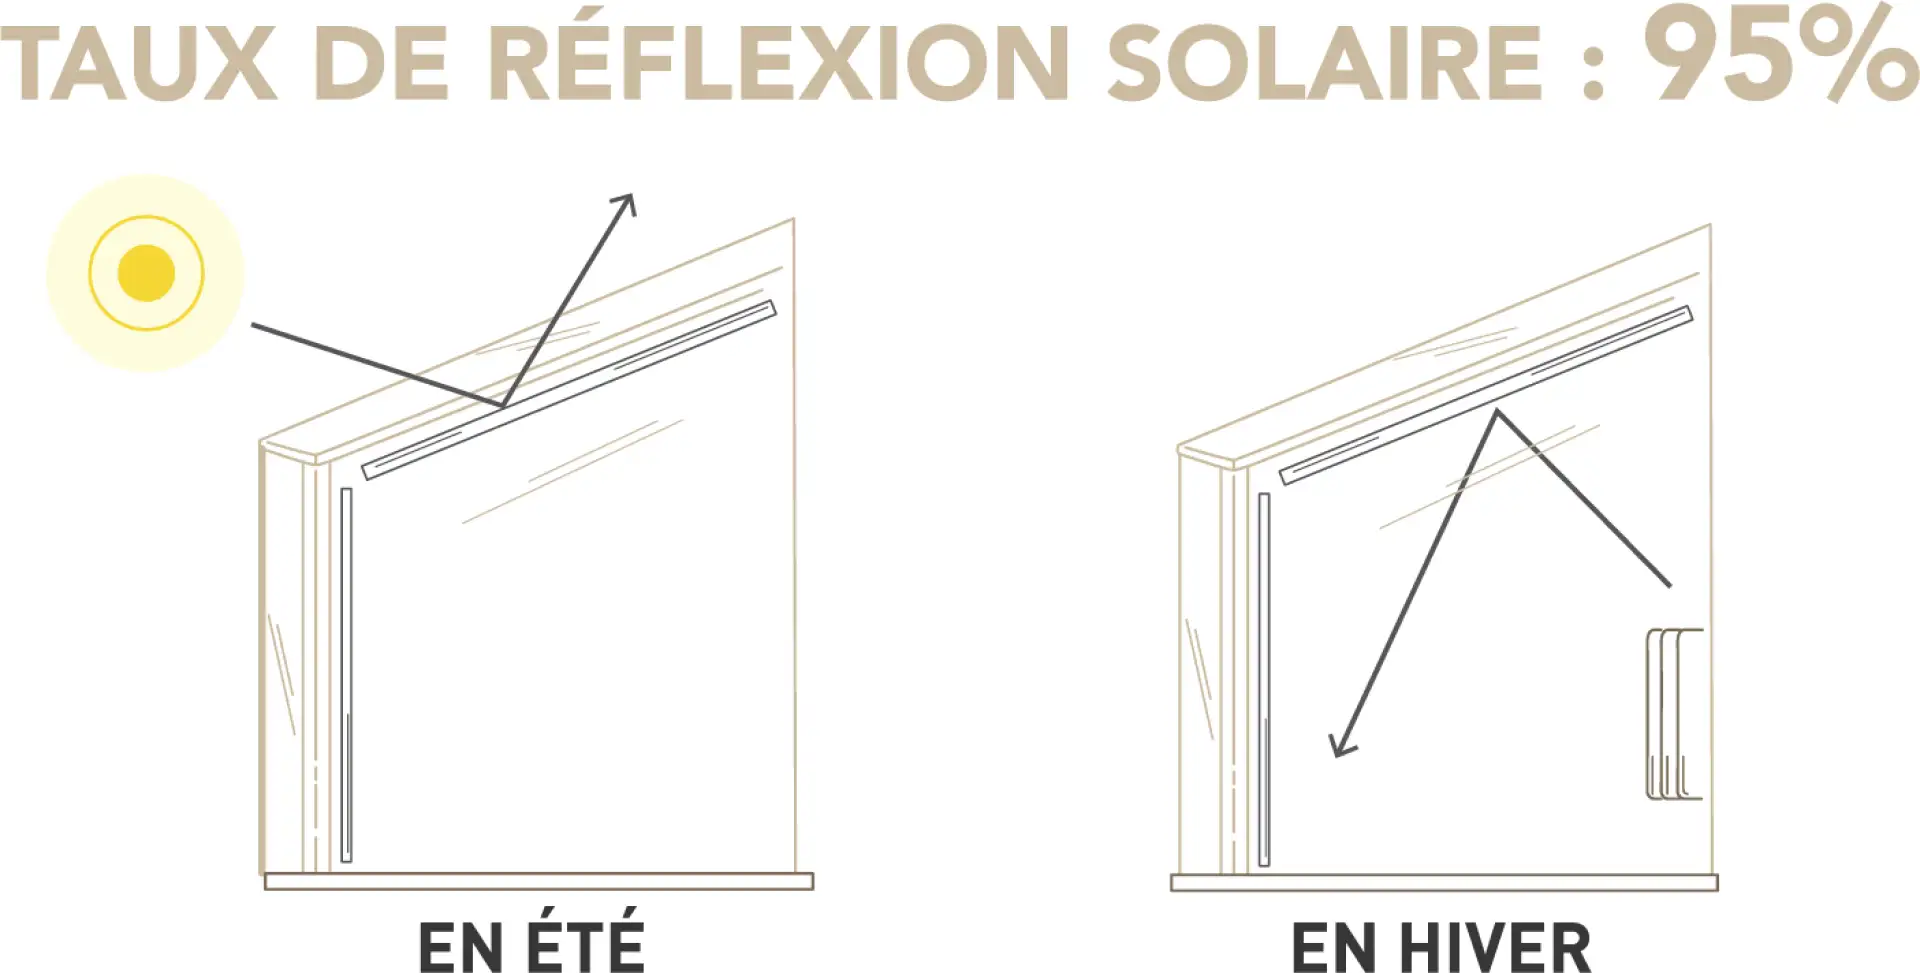 TAUX DE REFLEXION SOLAIRE REFLEXSOL